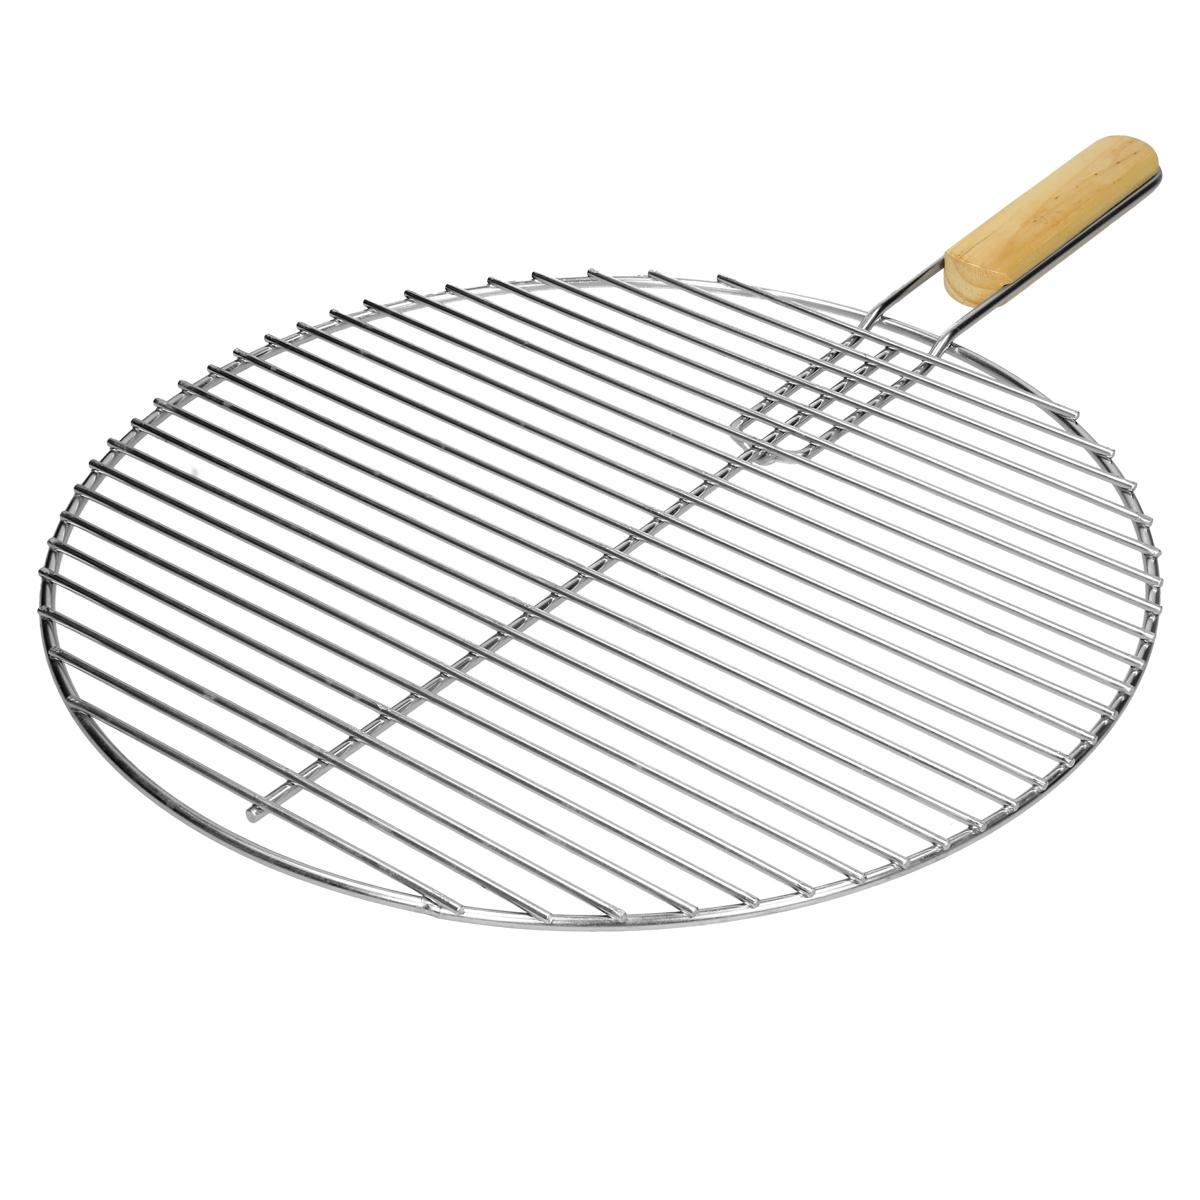 Pyöreä ruostumattomasta teräksestä valmistettu grilli, Ø 44,5 cm, jossa on  - Gigantti verkkokauppa